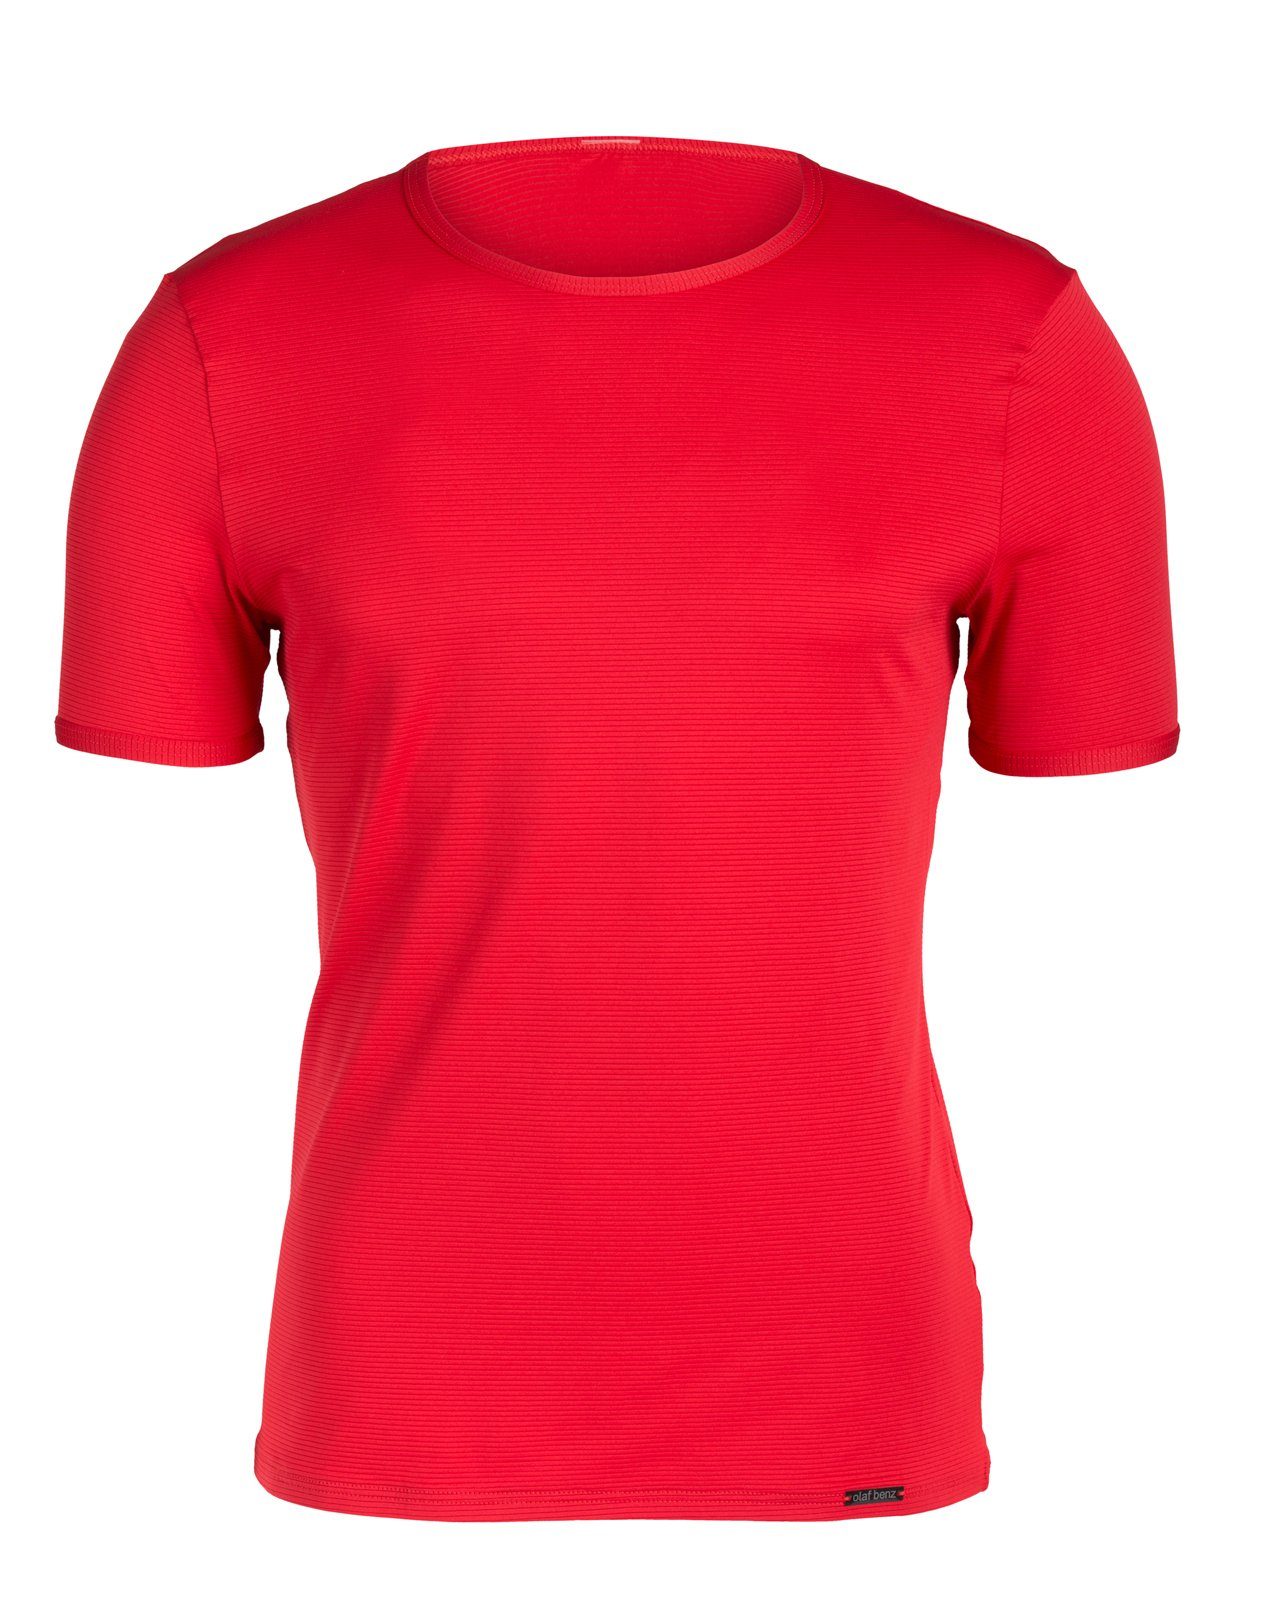 Olaf Benz Rot 1201 T-Shirt Doppelpack 2er-Pack) RED (Packung, Unterziehshirt